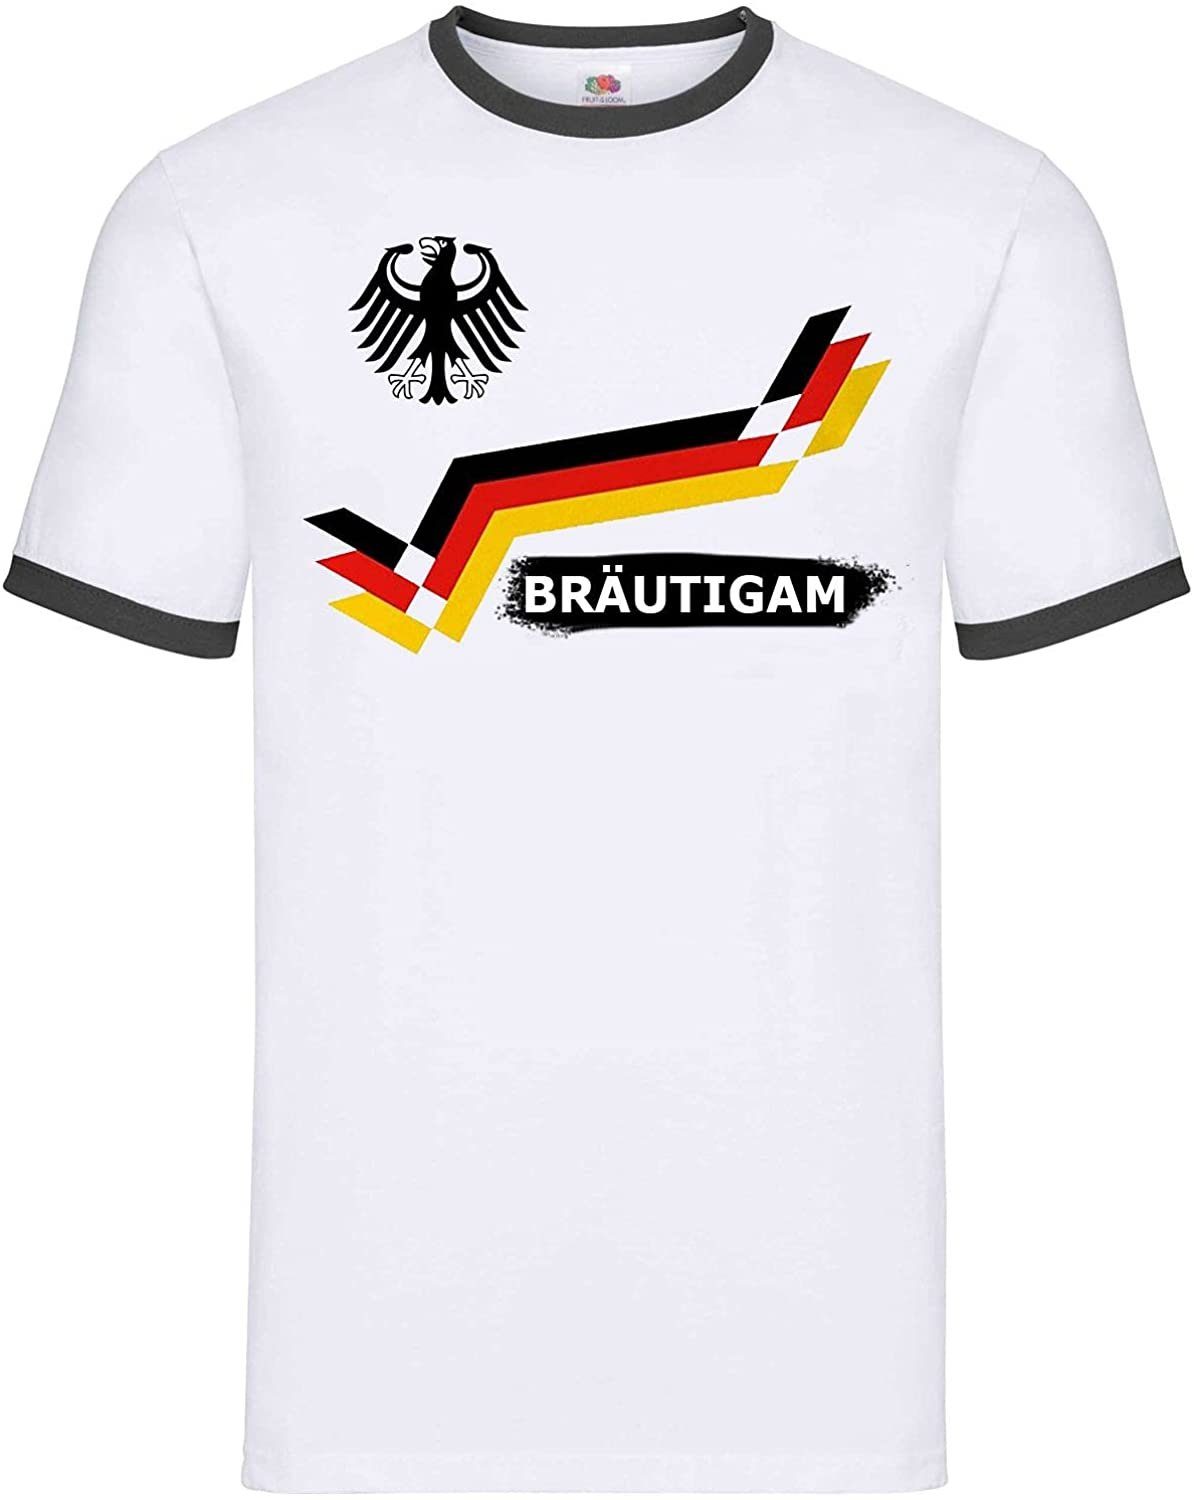 Youth Designz Print-Shirt JGA Bräutigam & Team Bräutigam Herren T-Shirt mit lustigem Spruch Aufdruck BRÄUTIGAM / Weiß